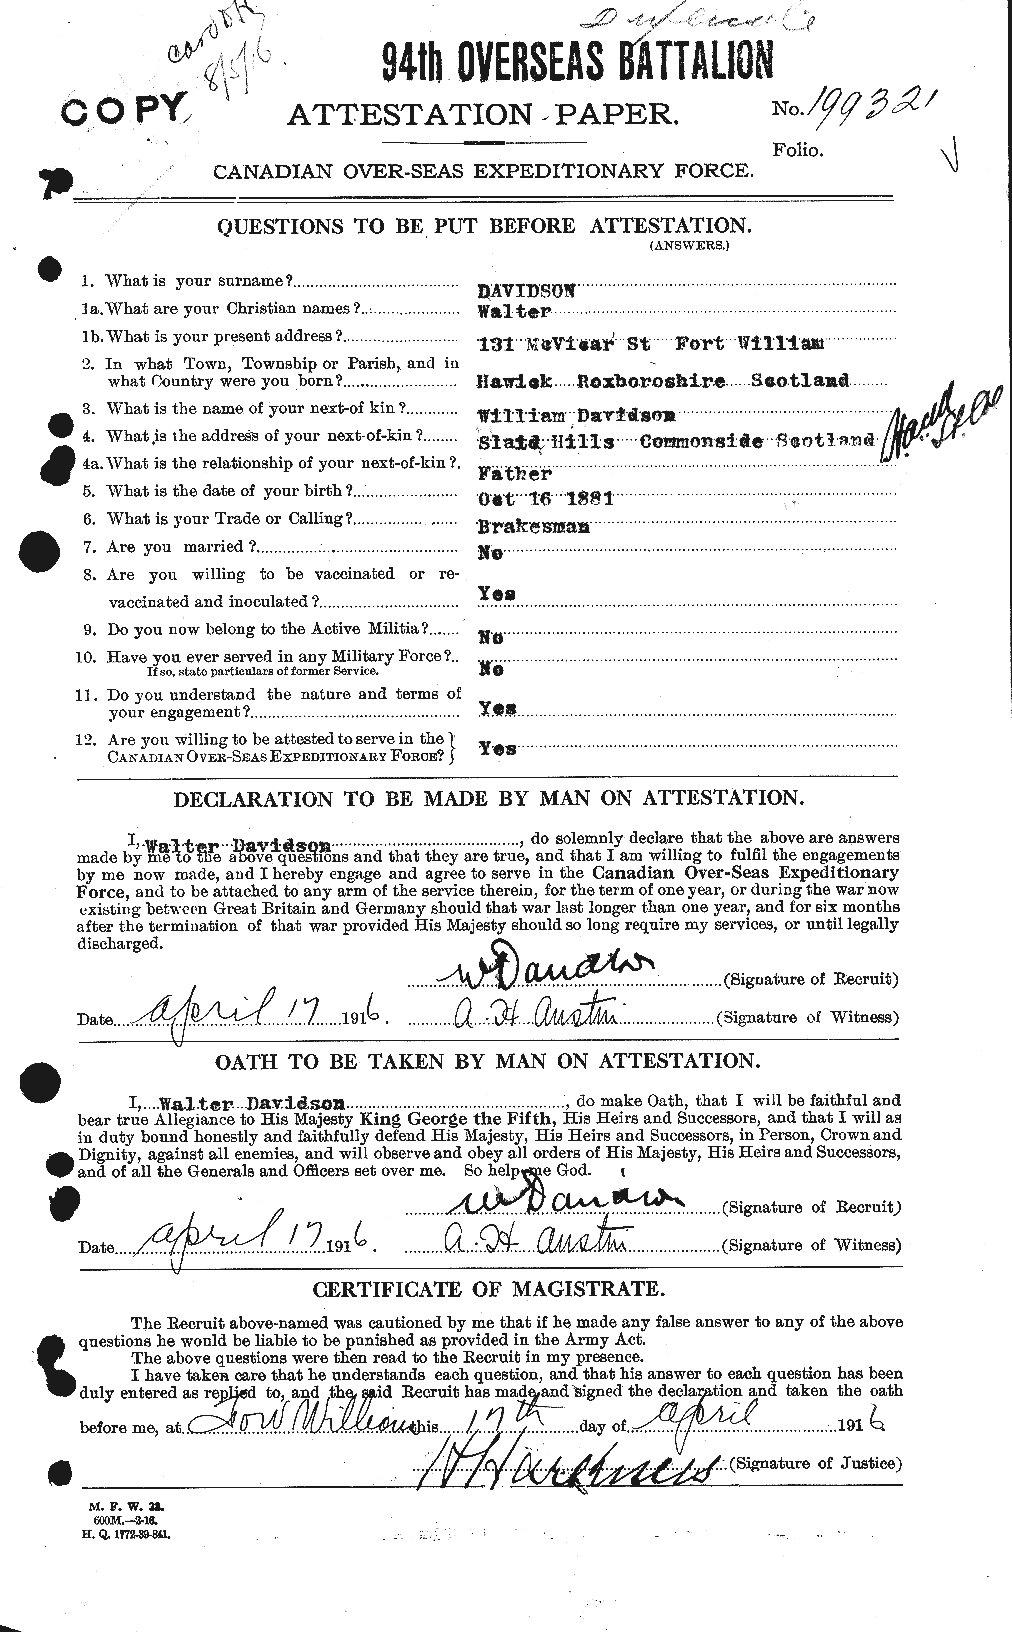 Dossiers du Personnel de la Première Guerre mondiale - CEC 278710a